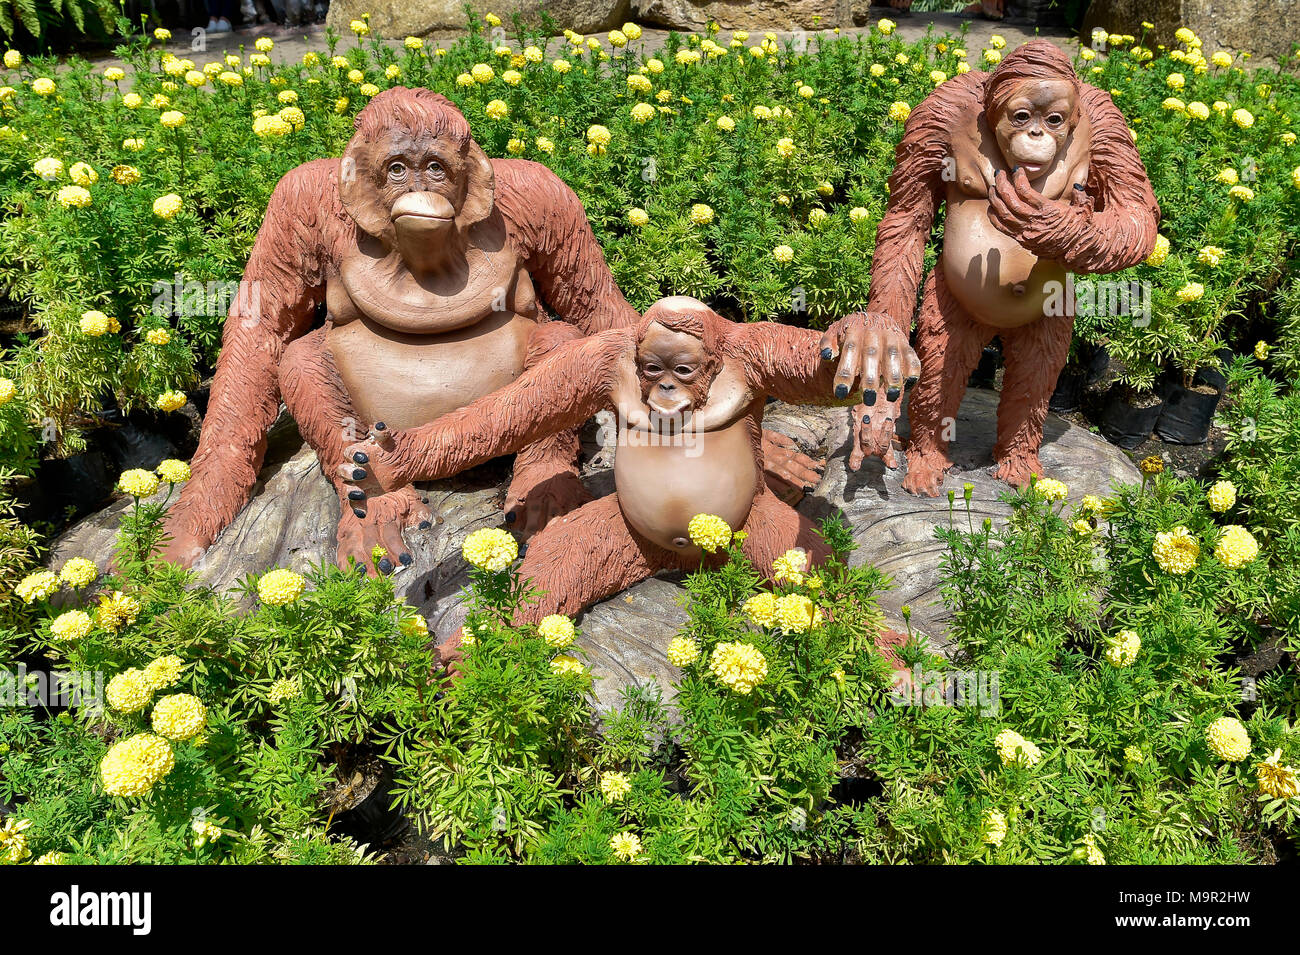 Orang Utan figures, Nong Nooch Tropical Botanical Garden, Pattaya, Thailand Stock Photo